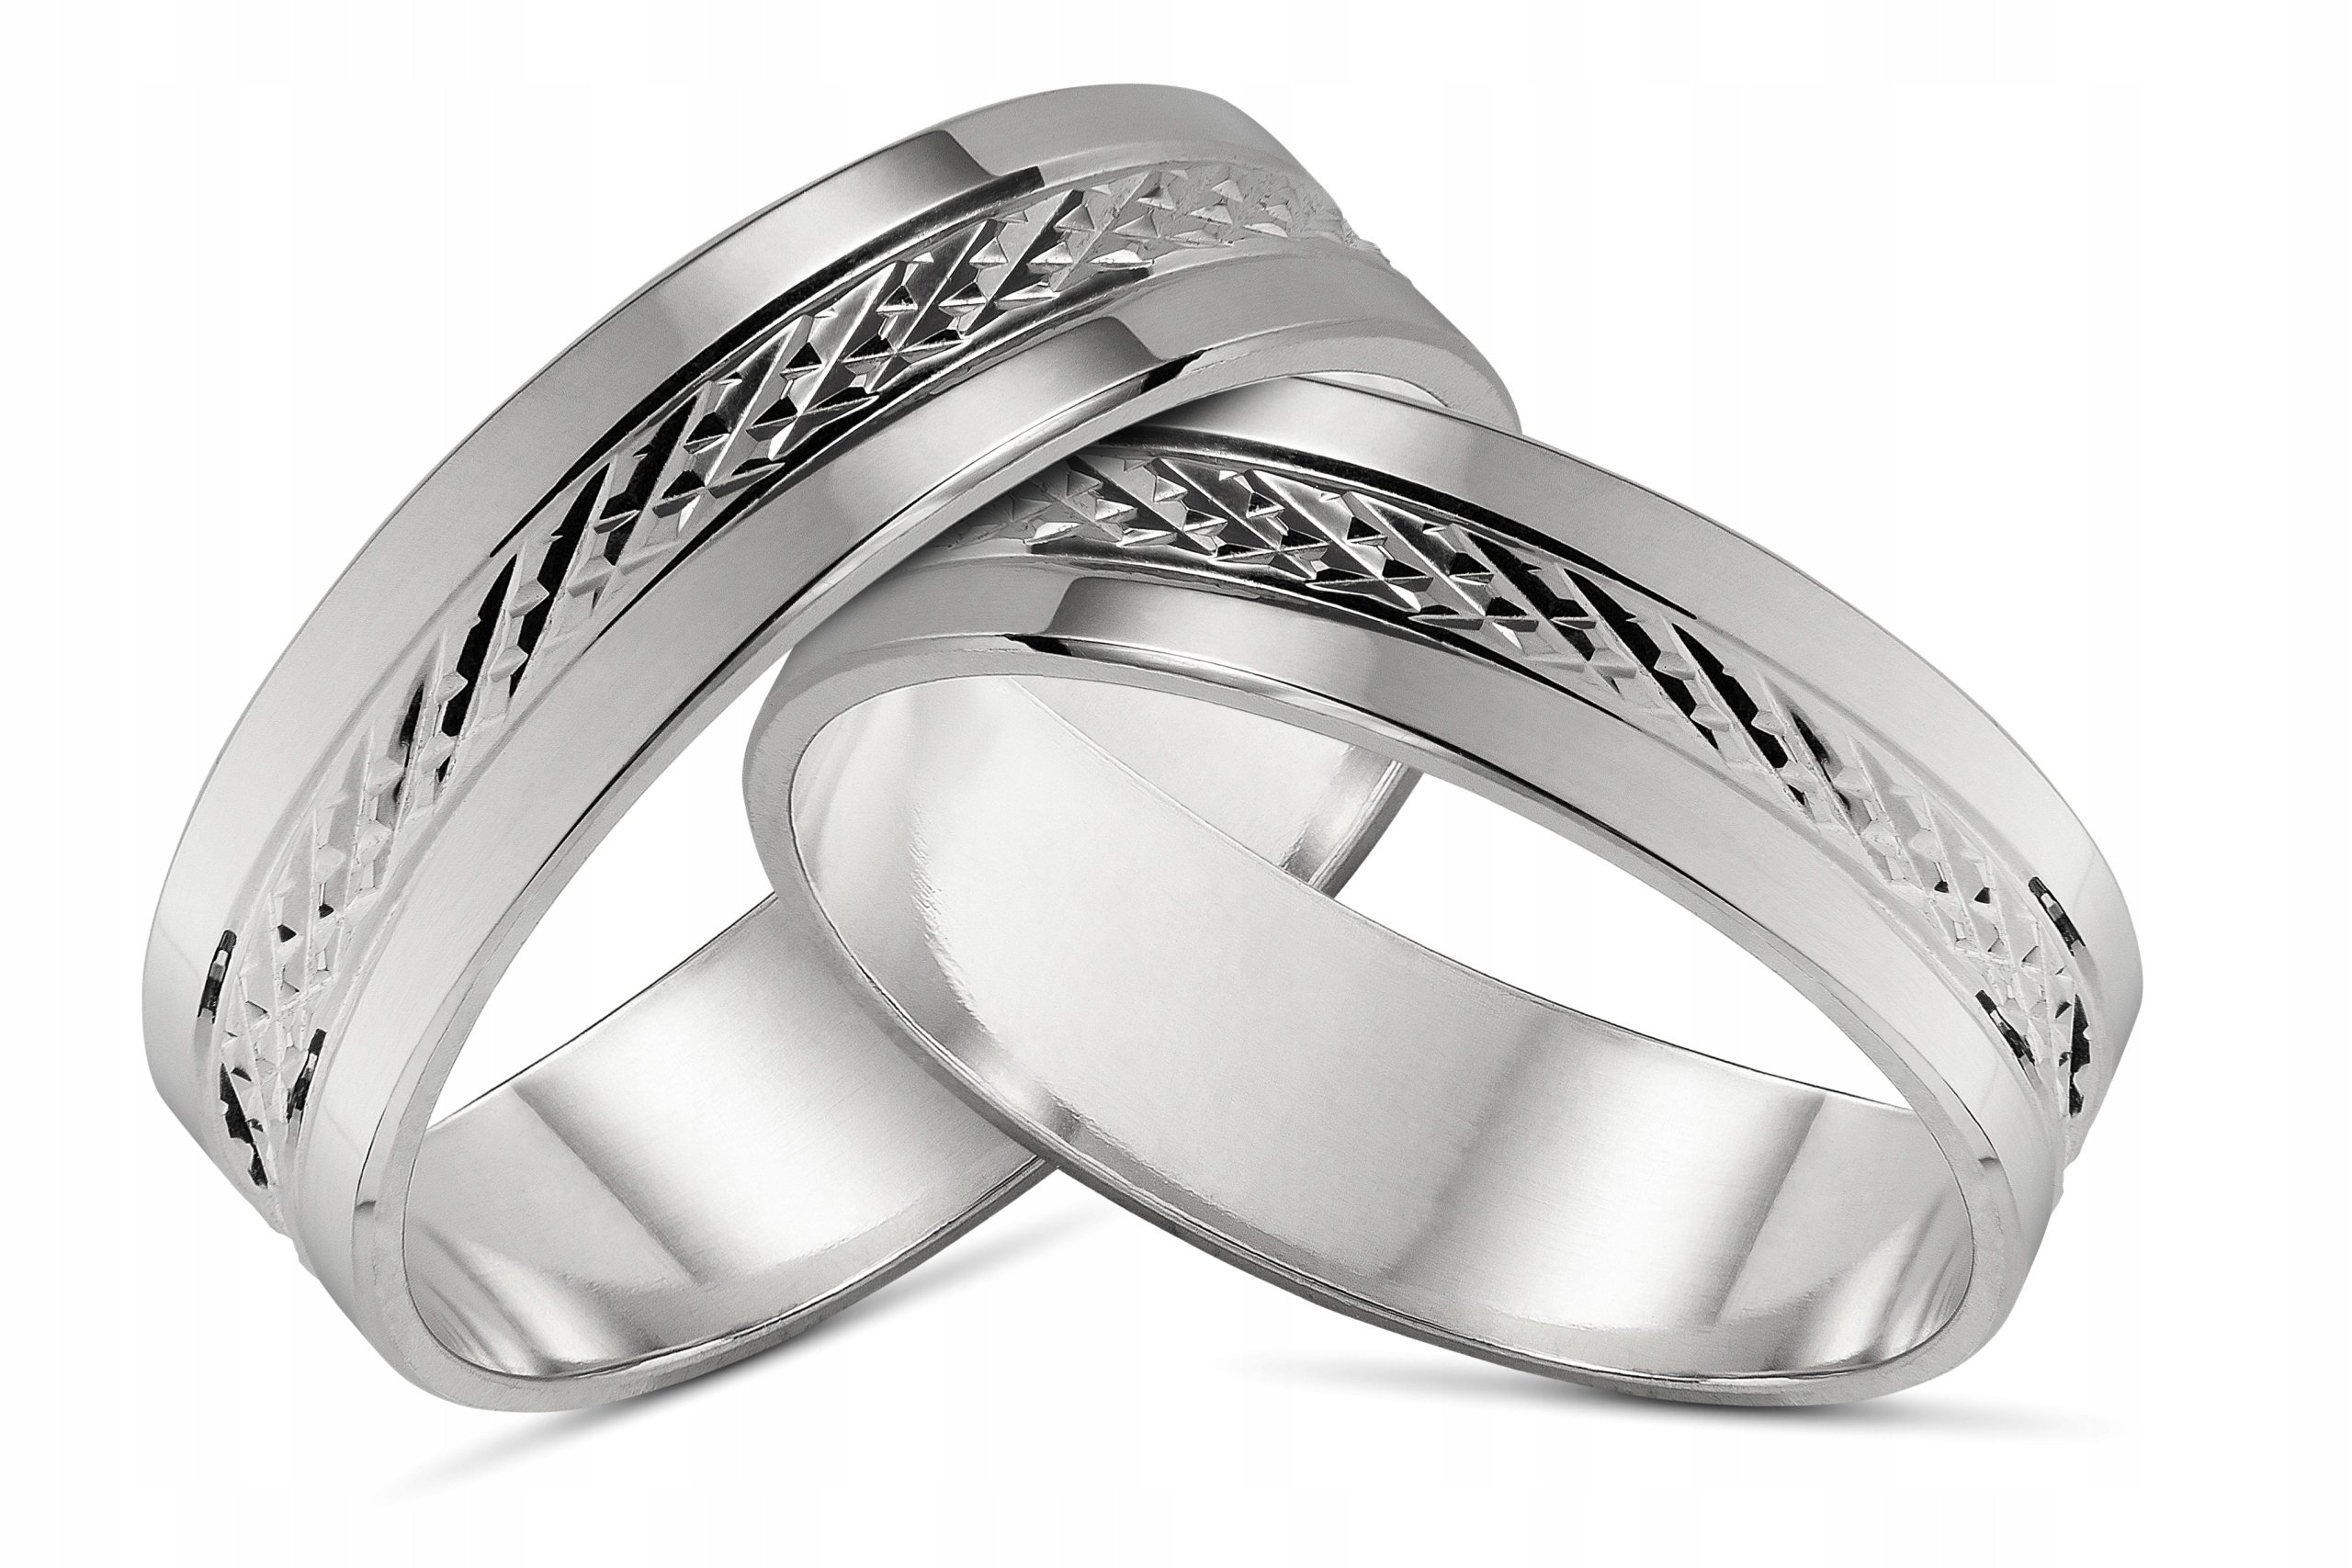 Можно обручальное кольцо серебряное. Парные кольца SEREBRO 925. SEREBRO 925 Kolca обручальные. Парные кольца Соколов серебро.